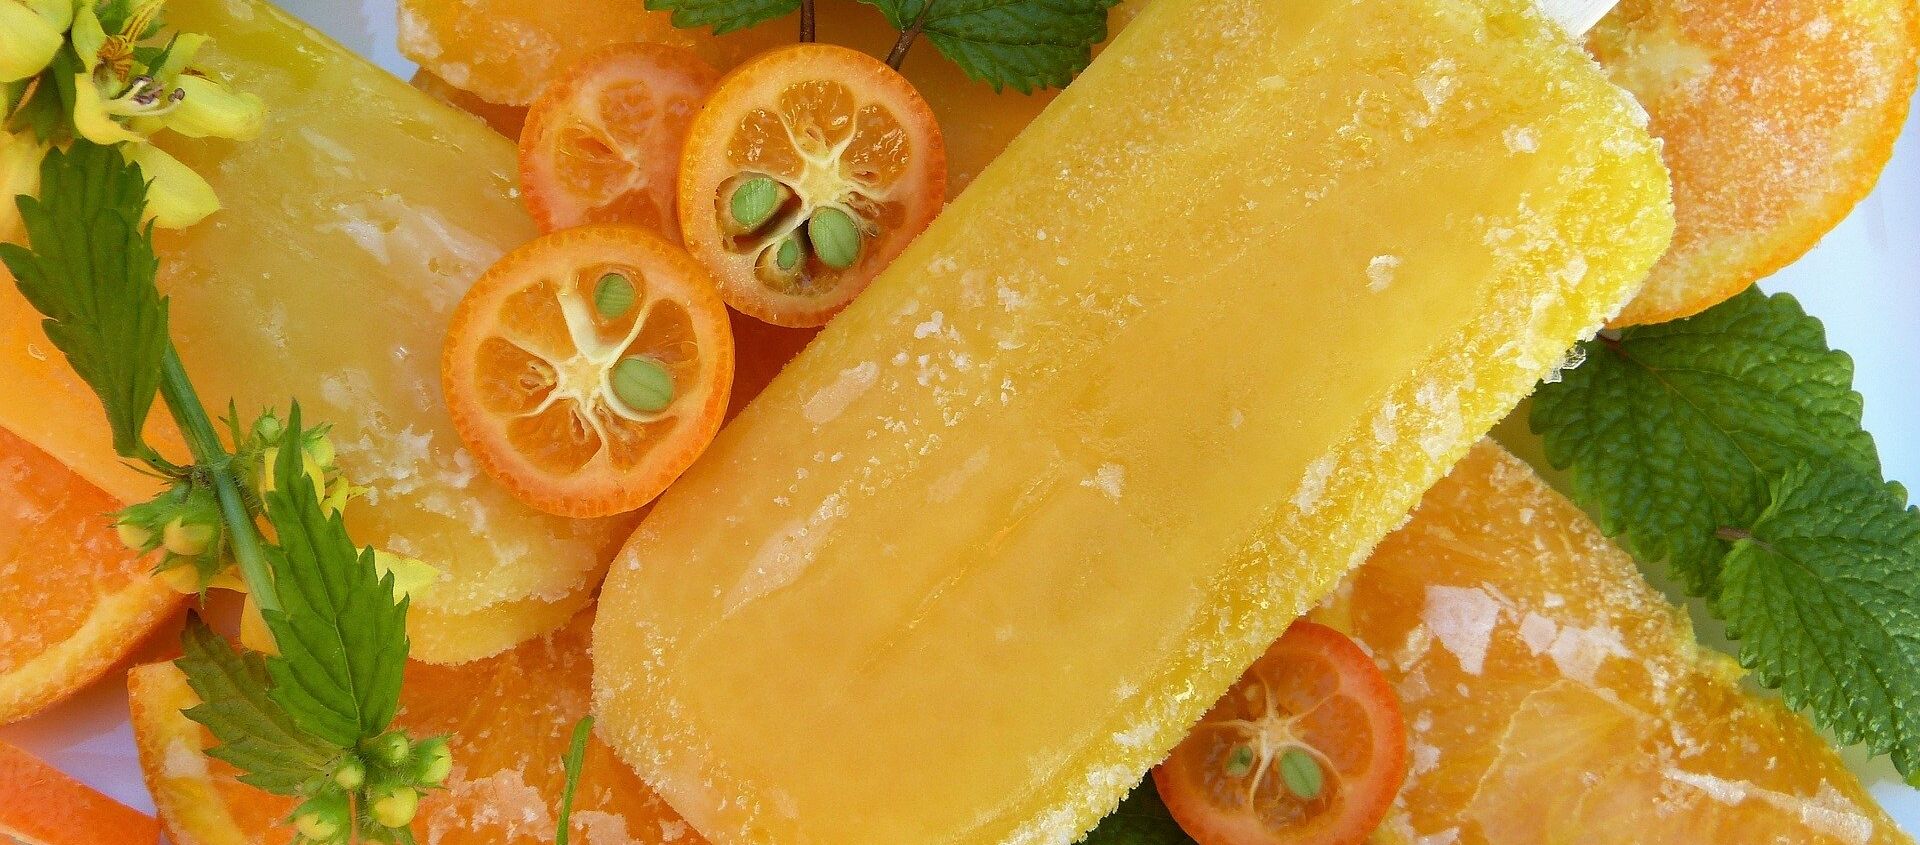 آيس كريم بطعم البرتقال - سبوتنيك عربي, 1920, 04.04.2021